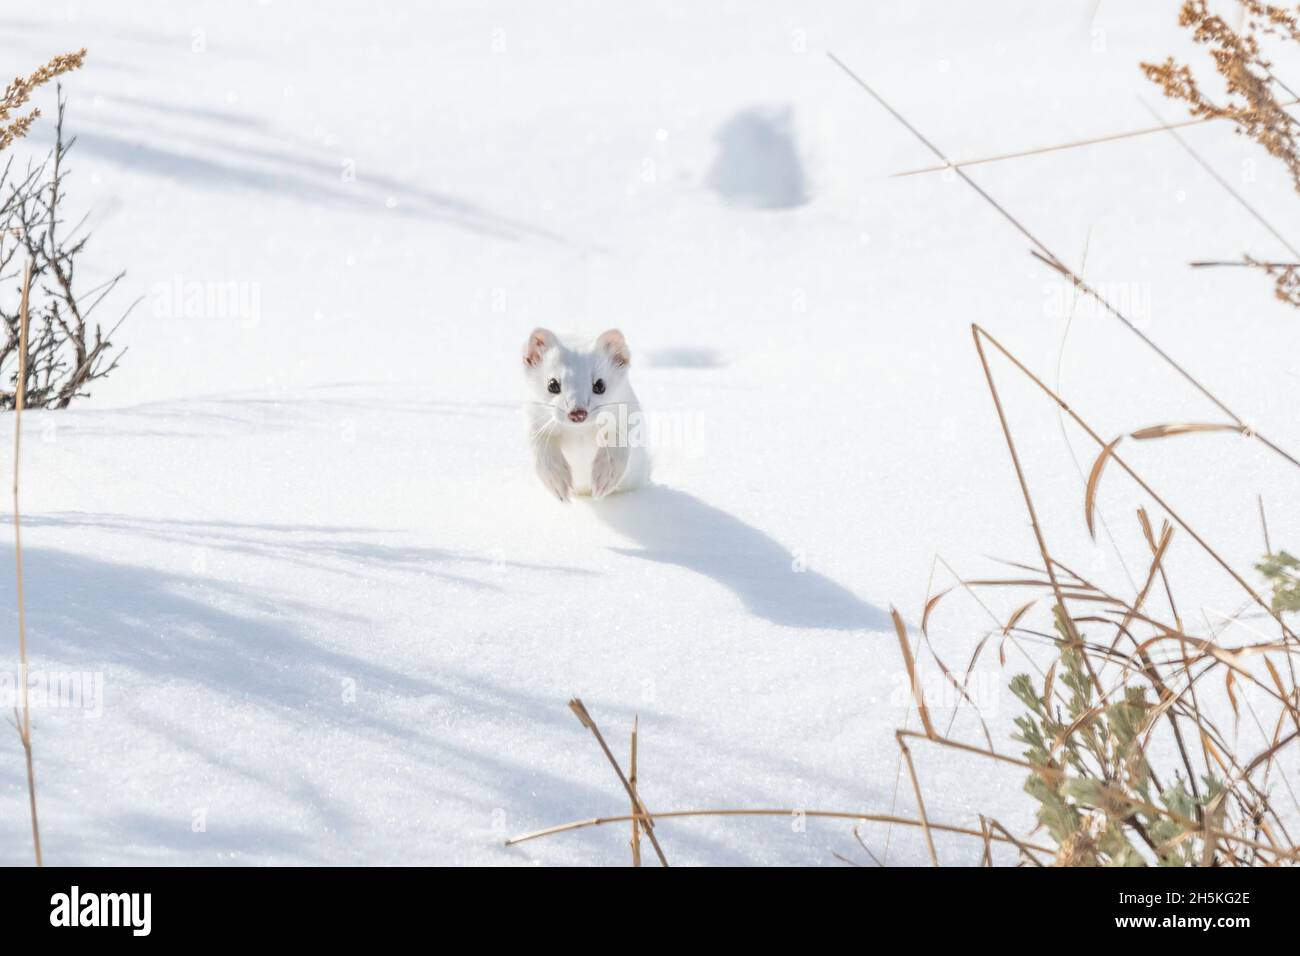 Un weasel de cola corta (Mustela erminea) saltando en la nieve, mirando la cámara, camuflado en su abrigo blanco de invierno Foto de stock